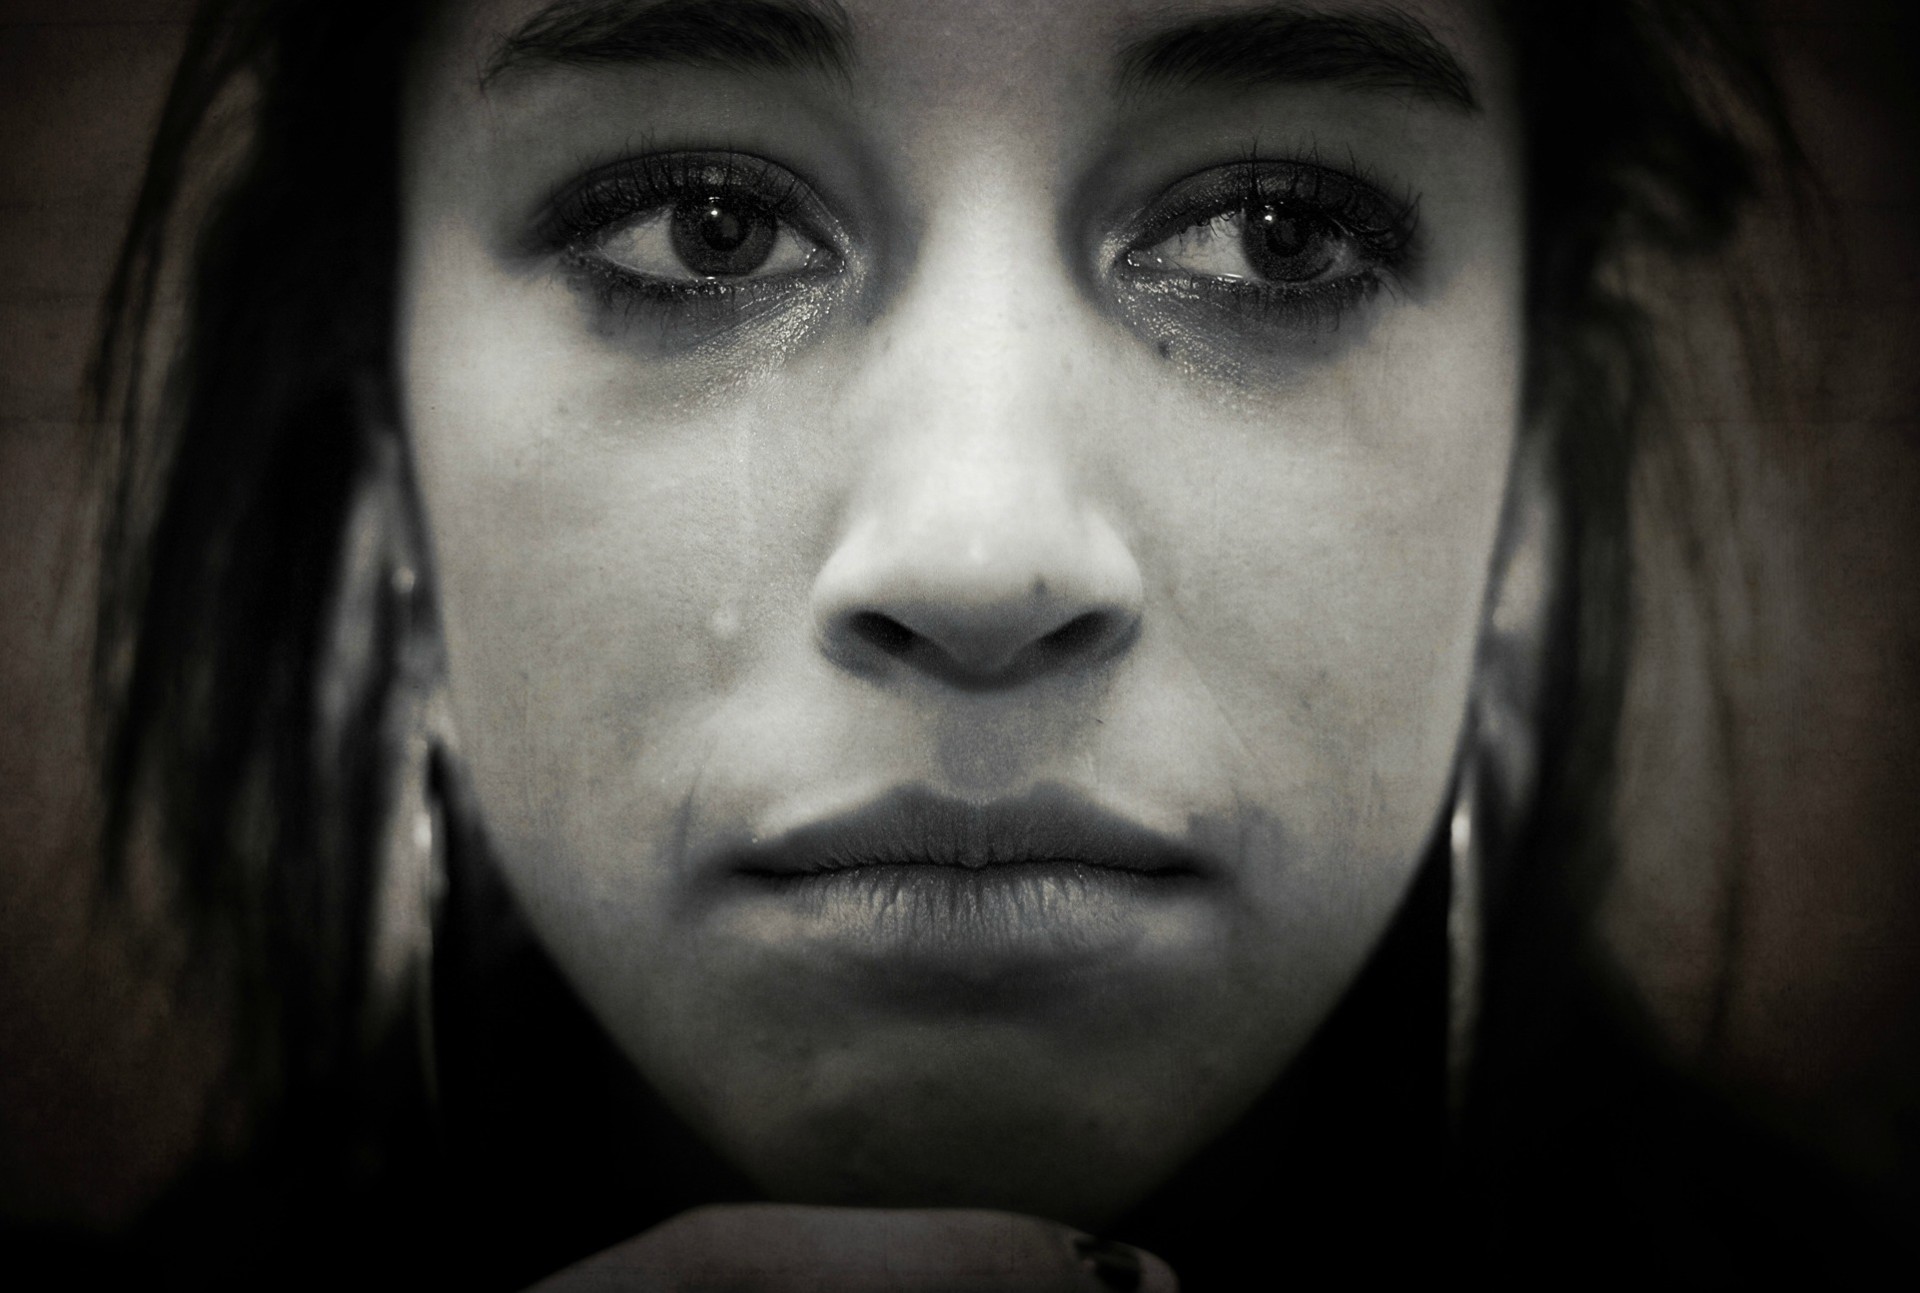 Une veillée de prière pour "essuyer les larmes"(Photo:Gideon van der Selt/Flickr/CC BY-NC-ND 2.0)